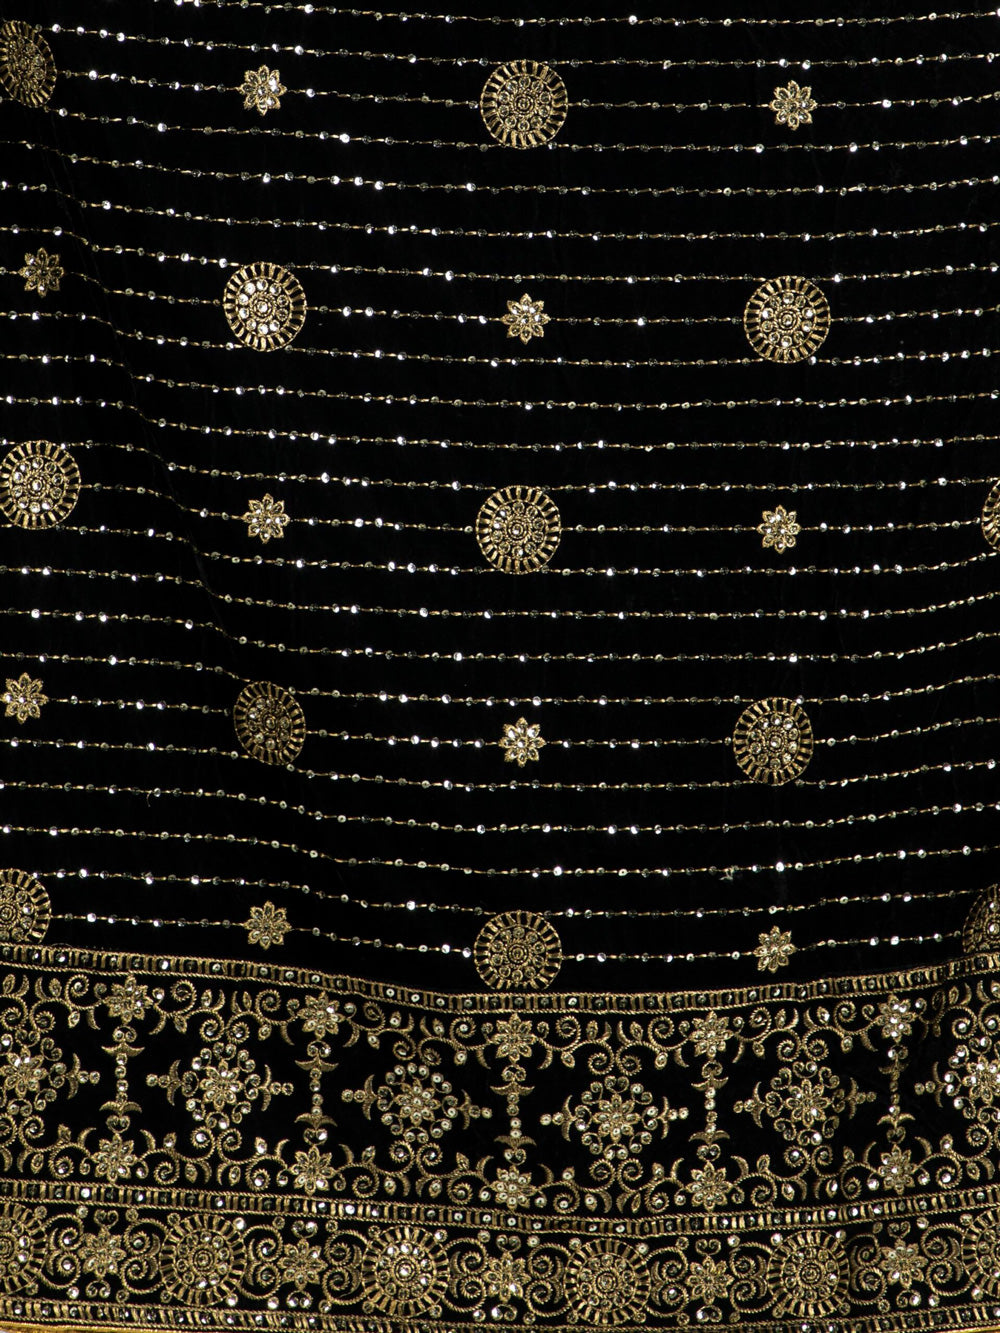 Women's Black & Gold Embroidered Velvet Shawl